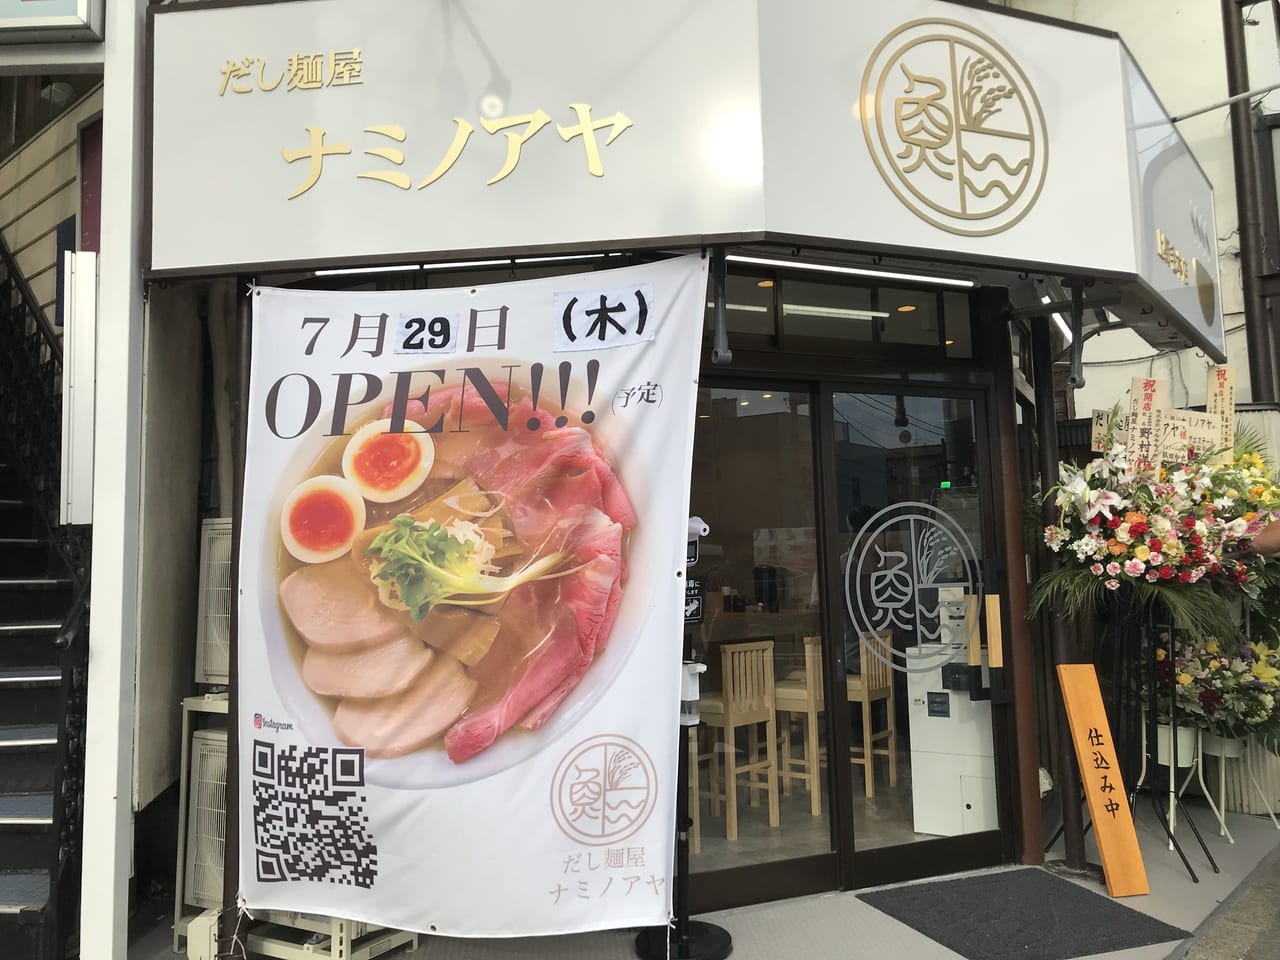 世田谷区上野毛に「だし麺屋ナミノアヤ」が2021年7月29日オープンしました。